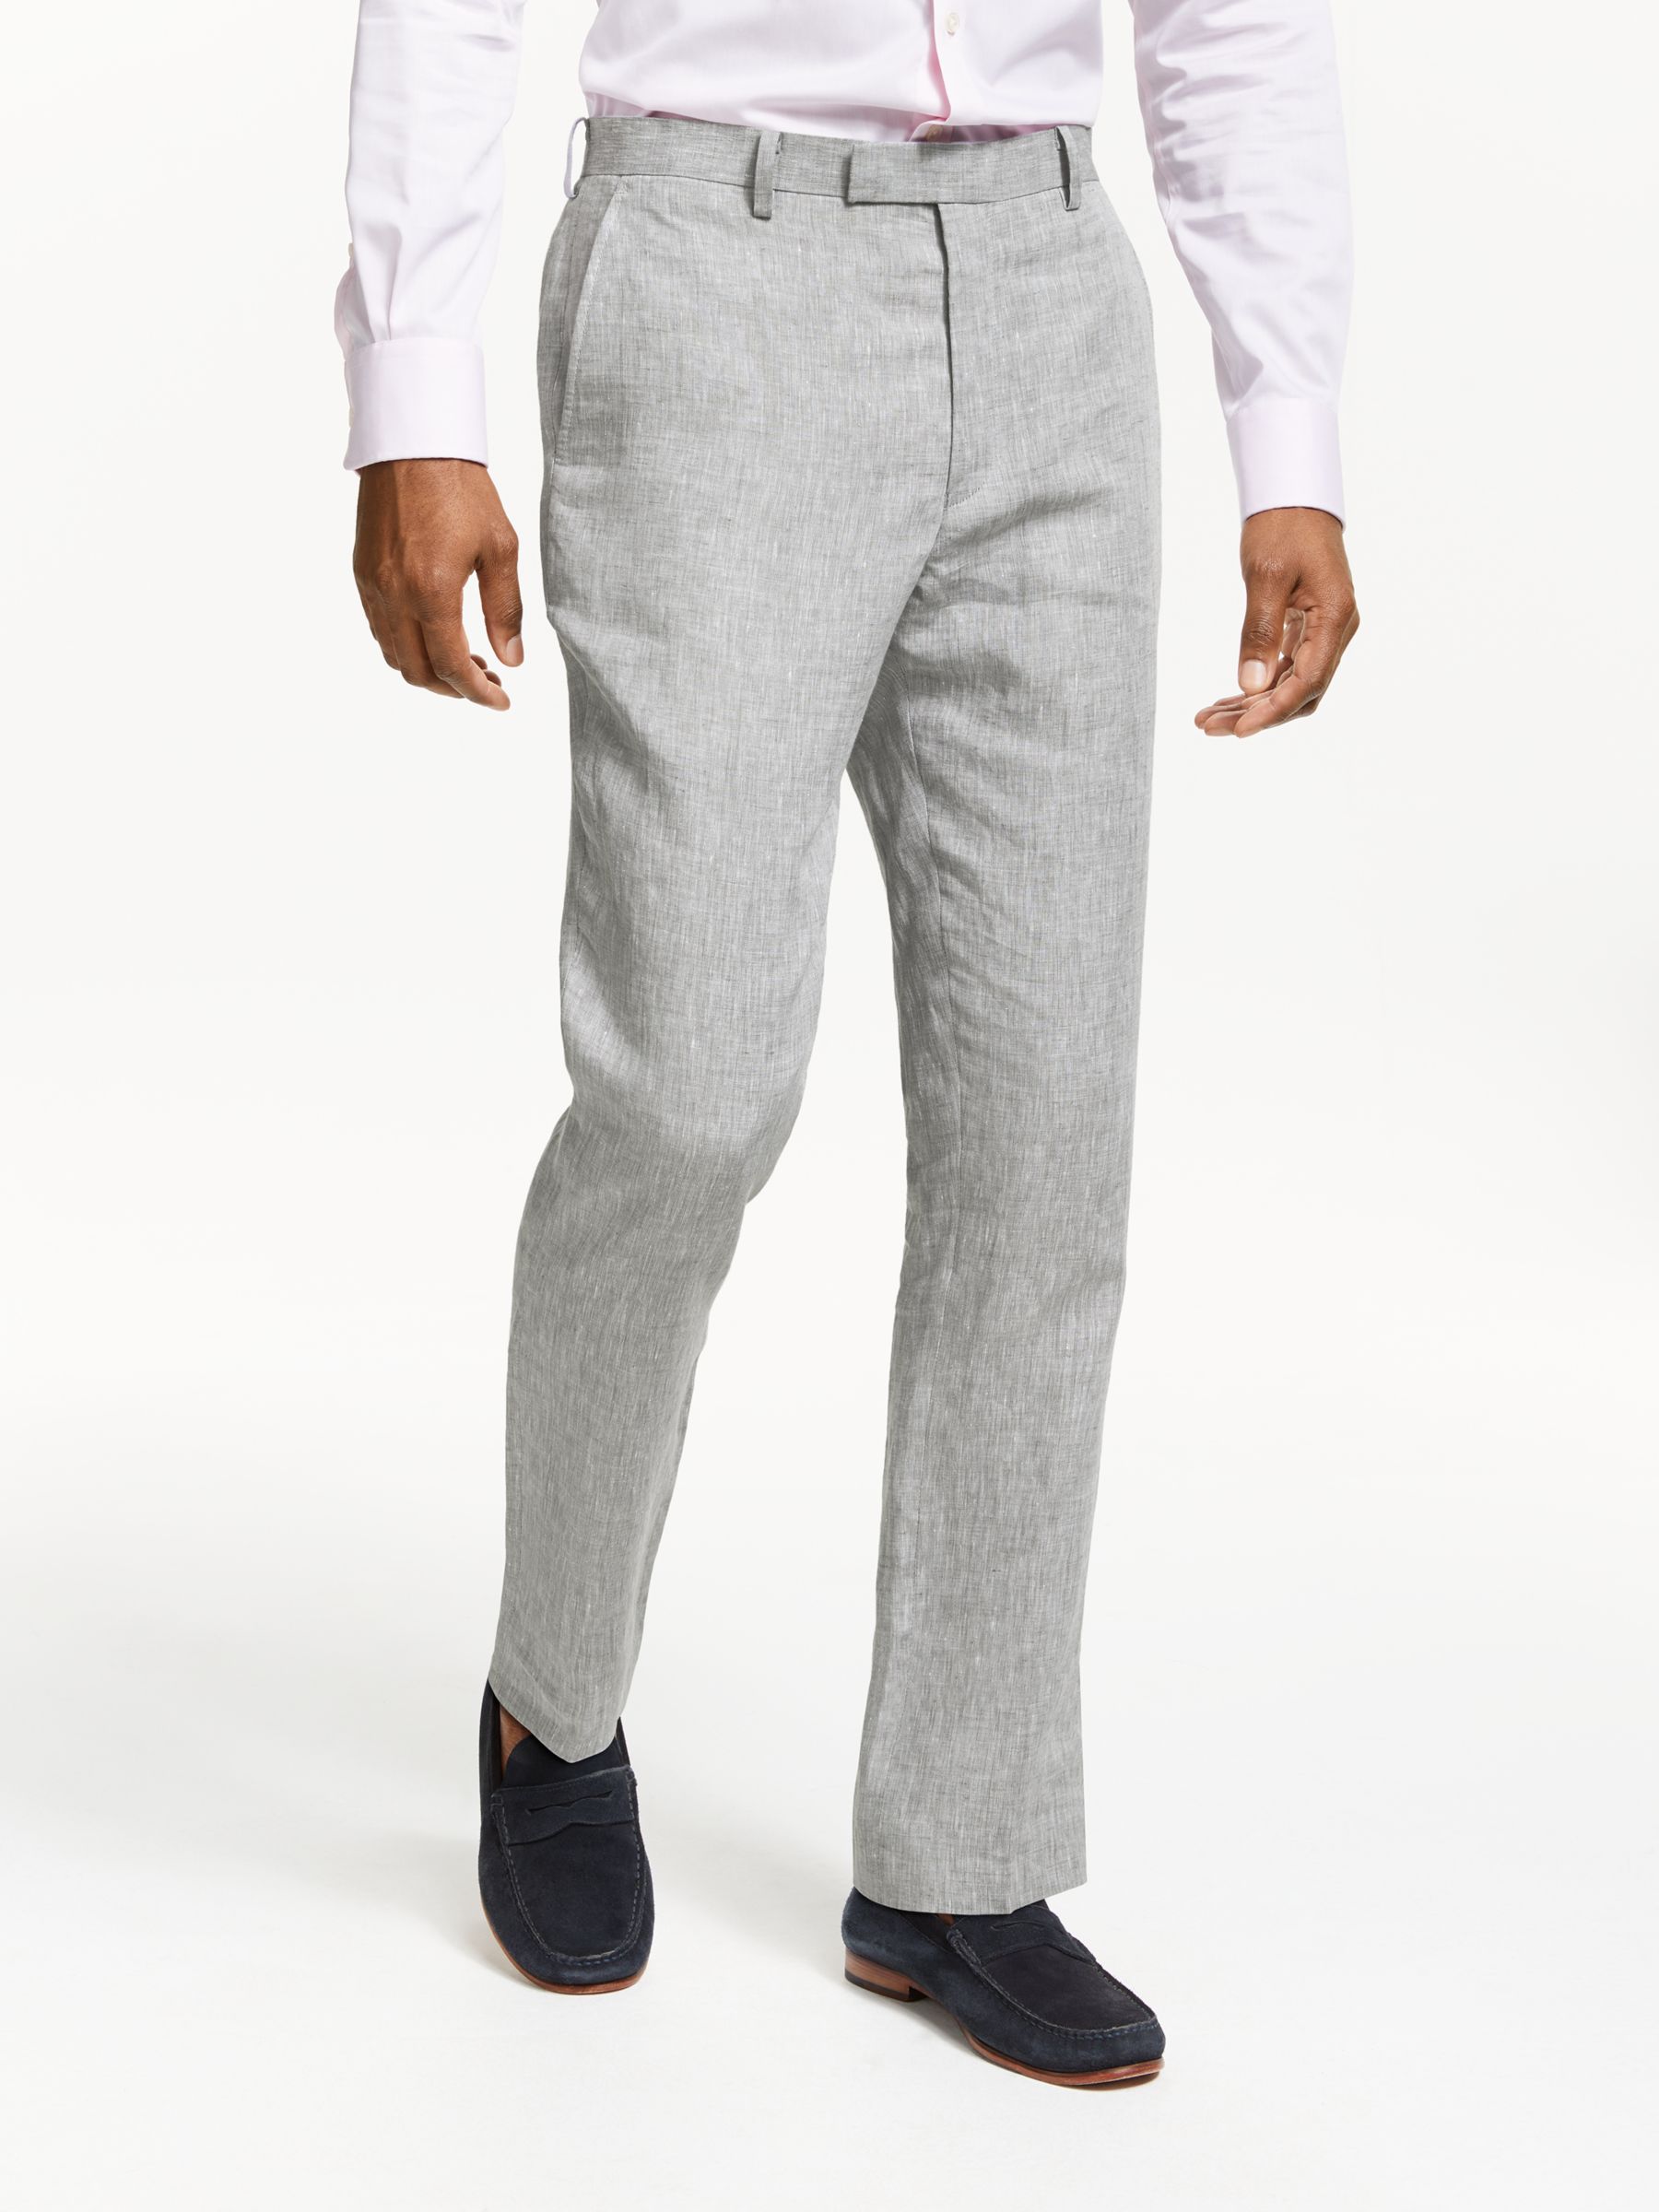 John Lewis & Partners Linen Slim Fit Suit Trousers, Silver